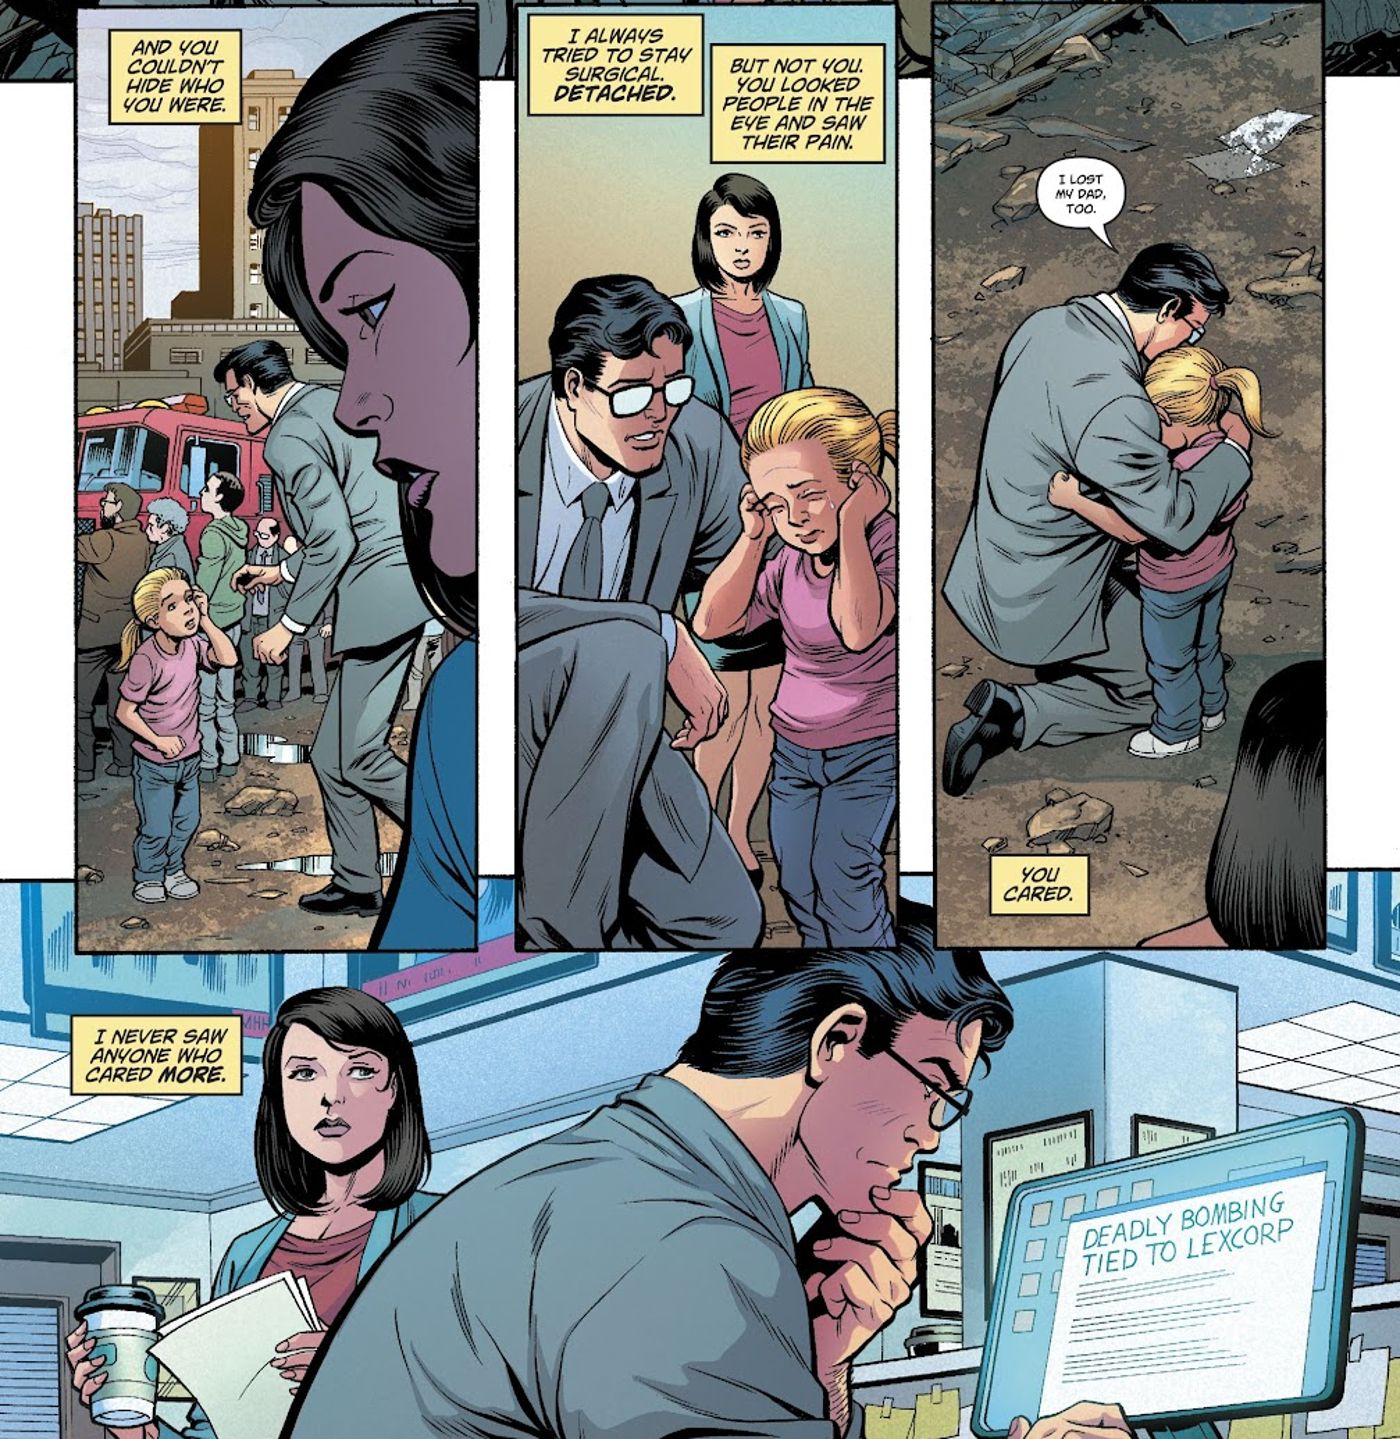 Misterios del amor en el espacio #1, Clark Kent abraza a un niño asustado y Lois Lane lo observa trabajar en un artículo del Daily Planet. 